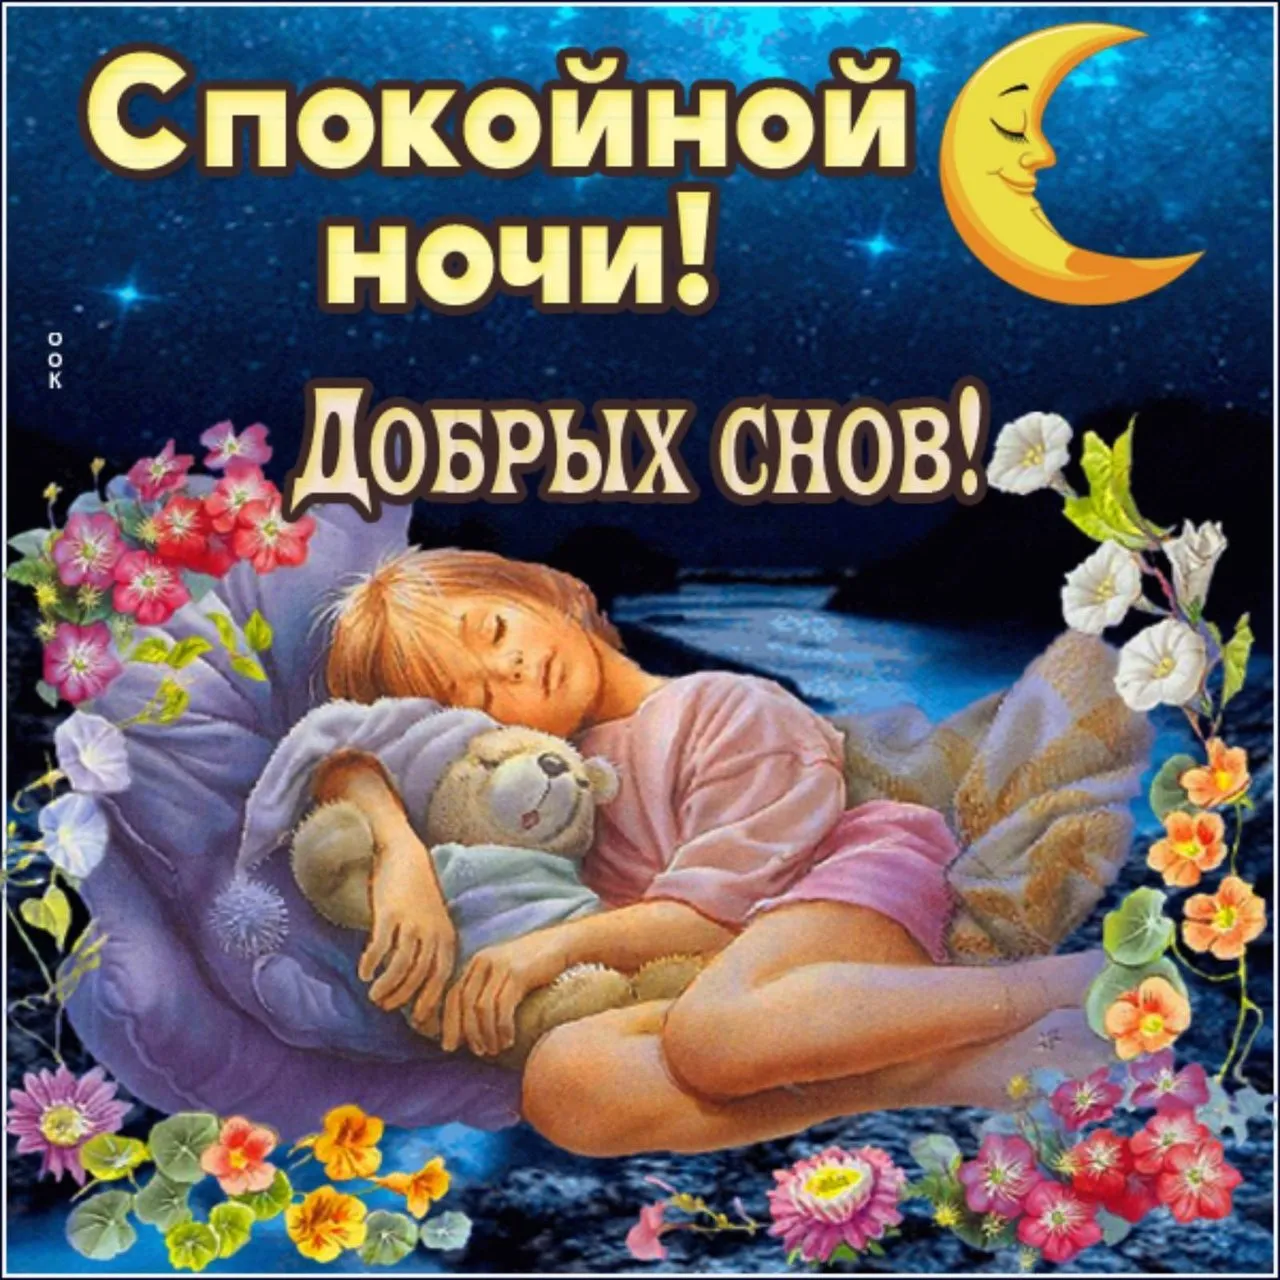 Наилучшие пожелания спокойной ночи женщине. Открытки спокойной ночи. Доброй ночи сладких снов. Доброй ночи приятных снов. Открытки спокойной ночи сладких снов.